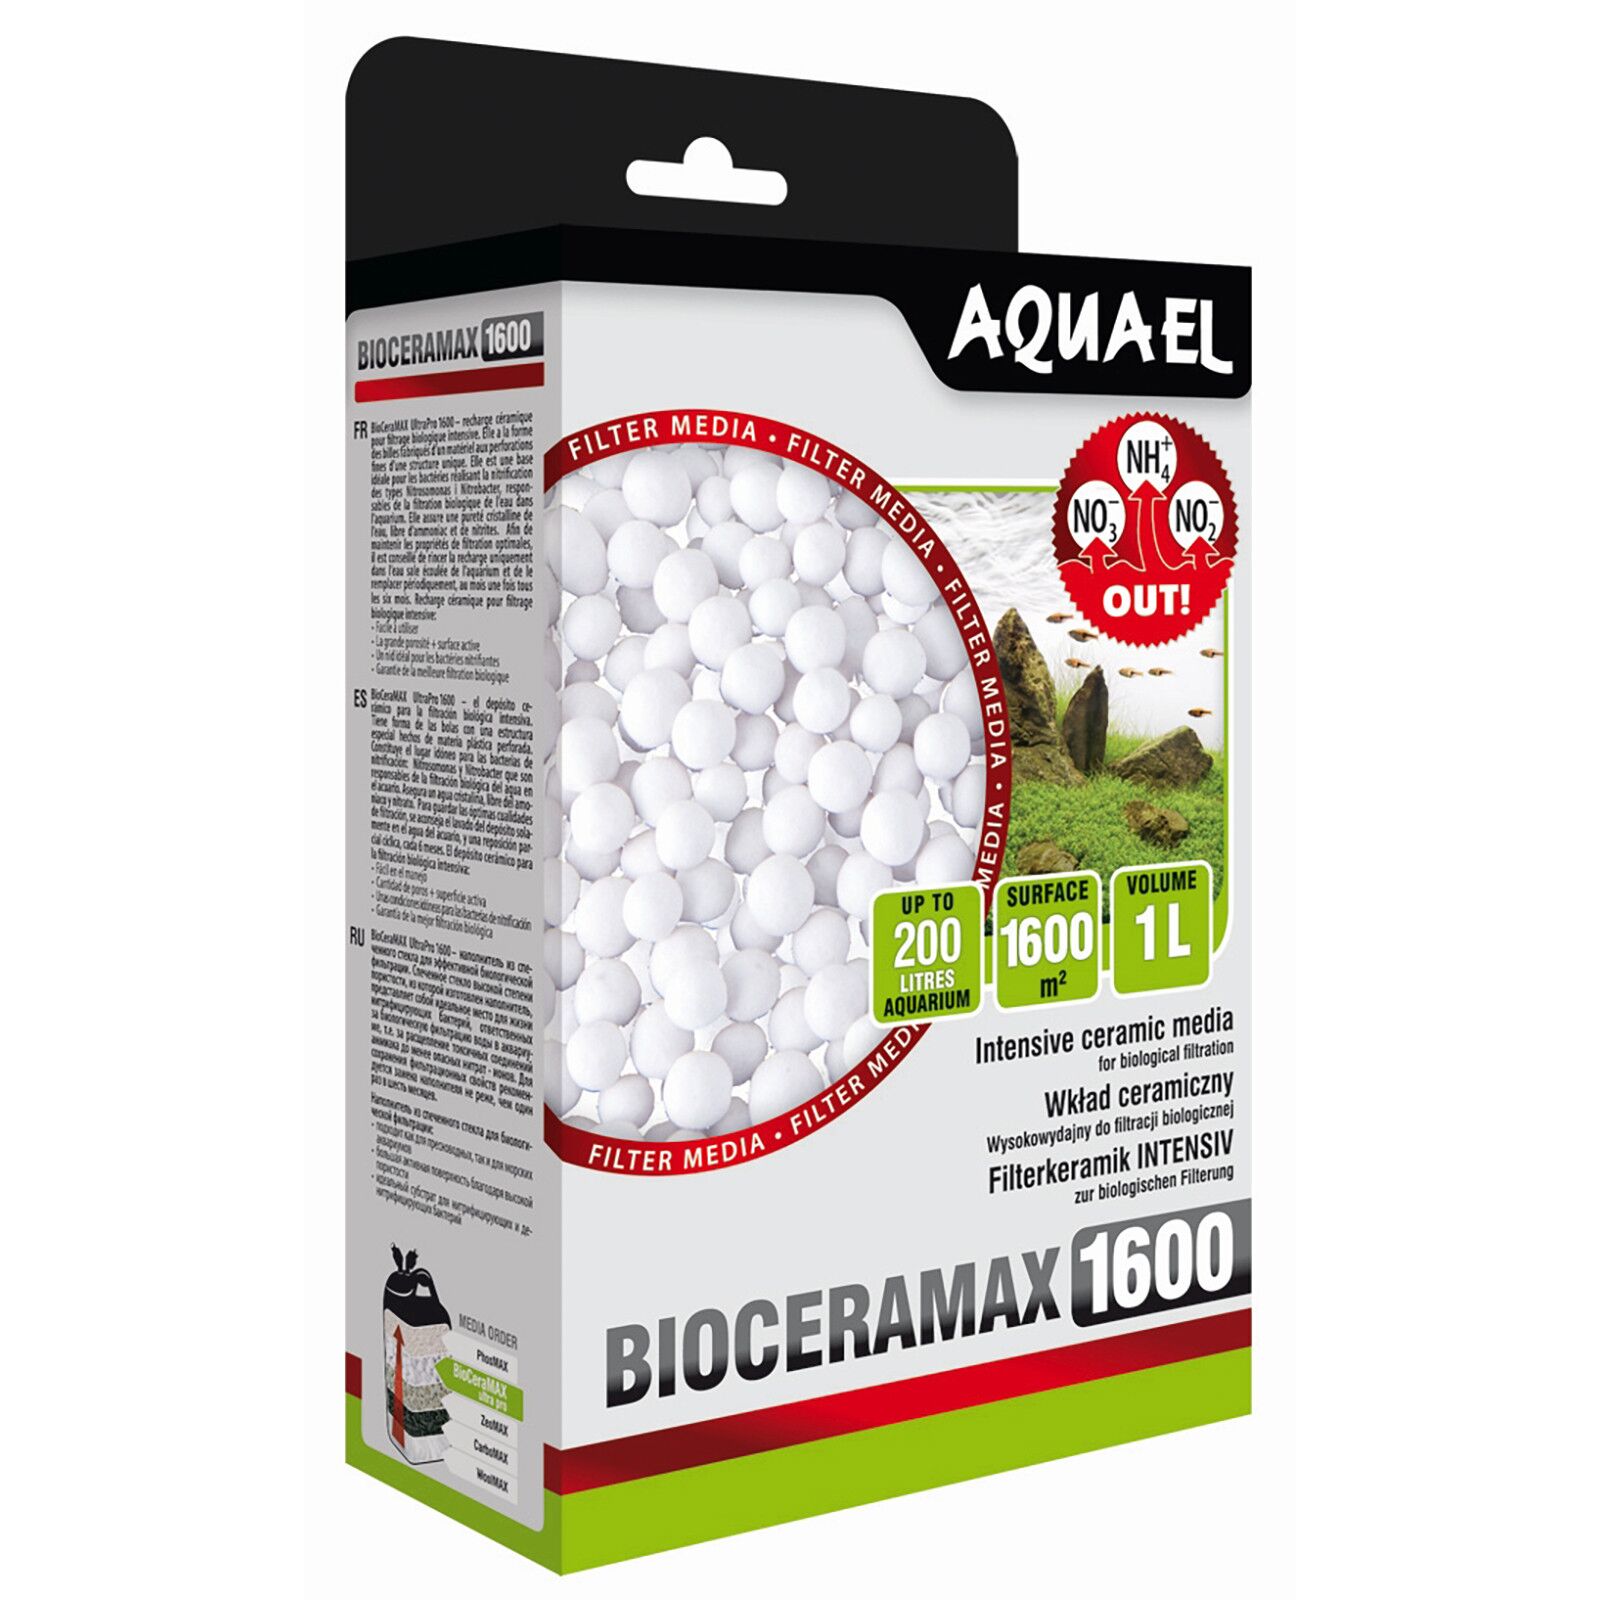 Aquael - Filter Medium - BioCeraMax